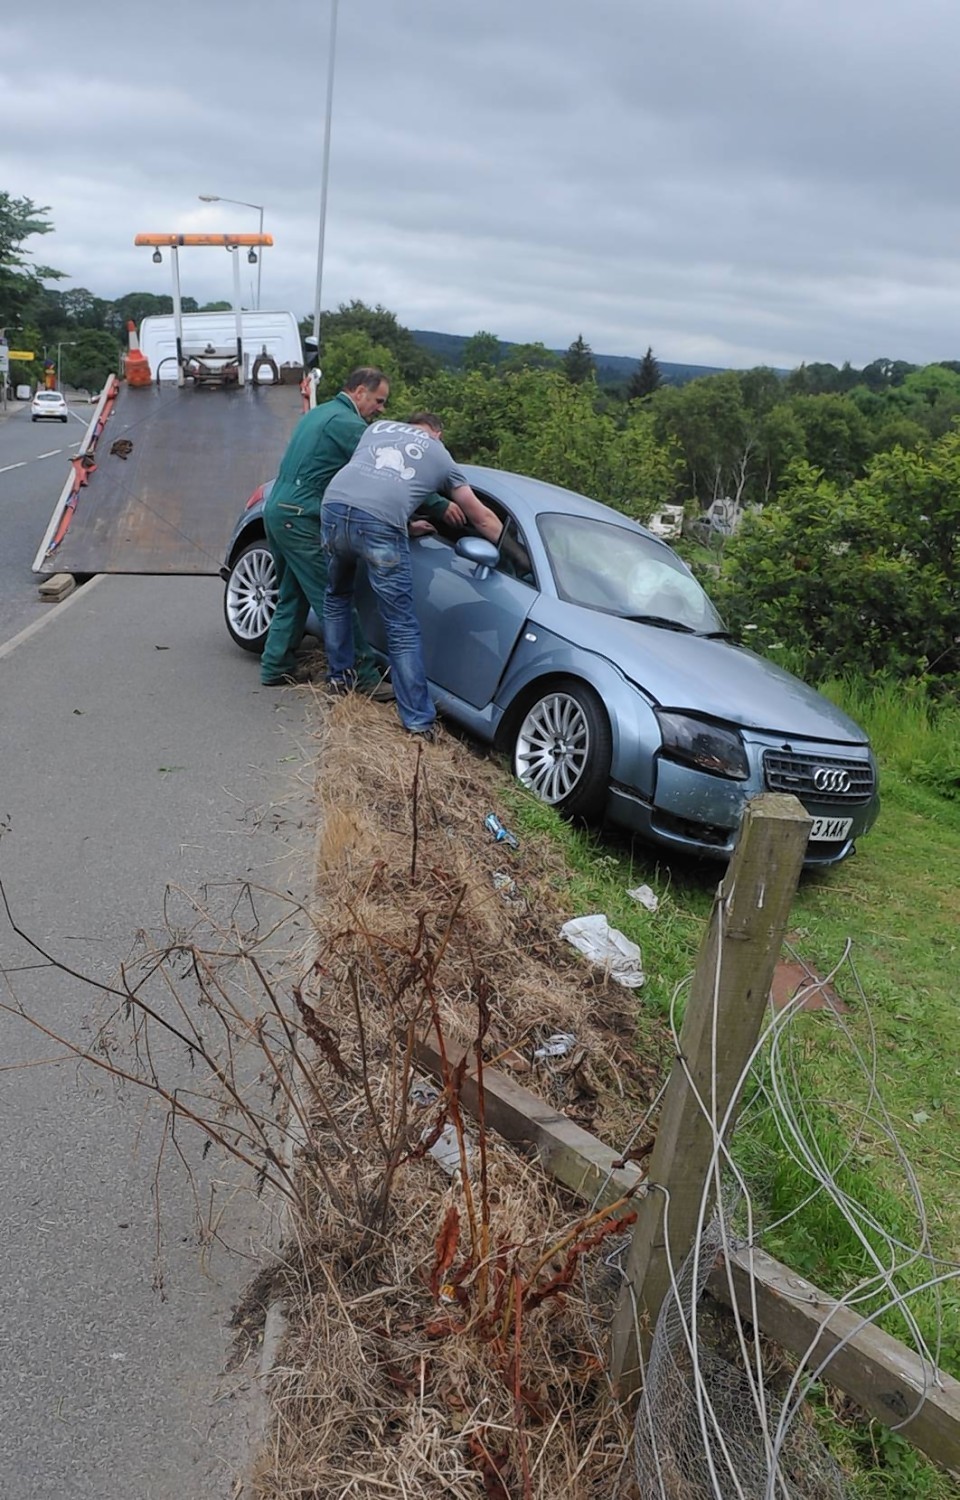 The Audi crash in Turriff